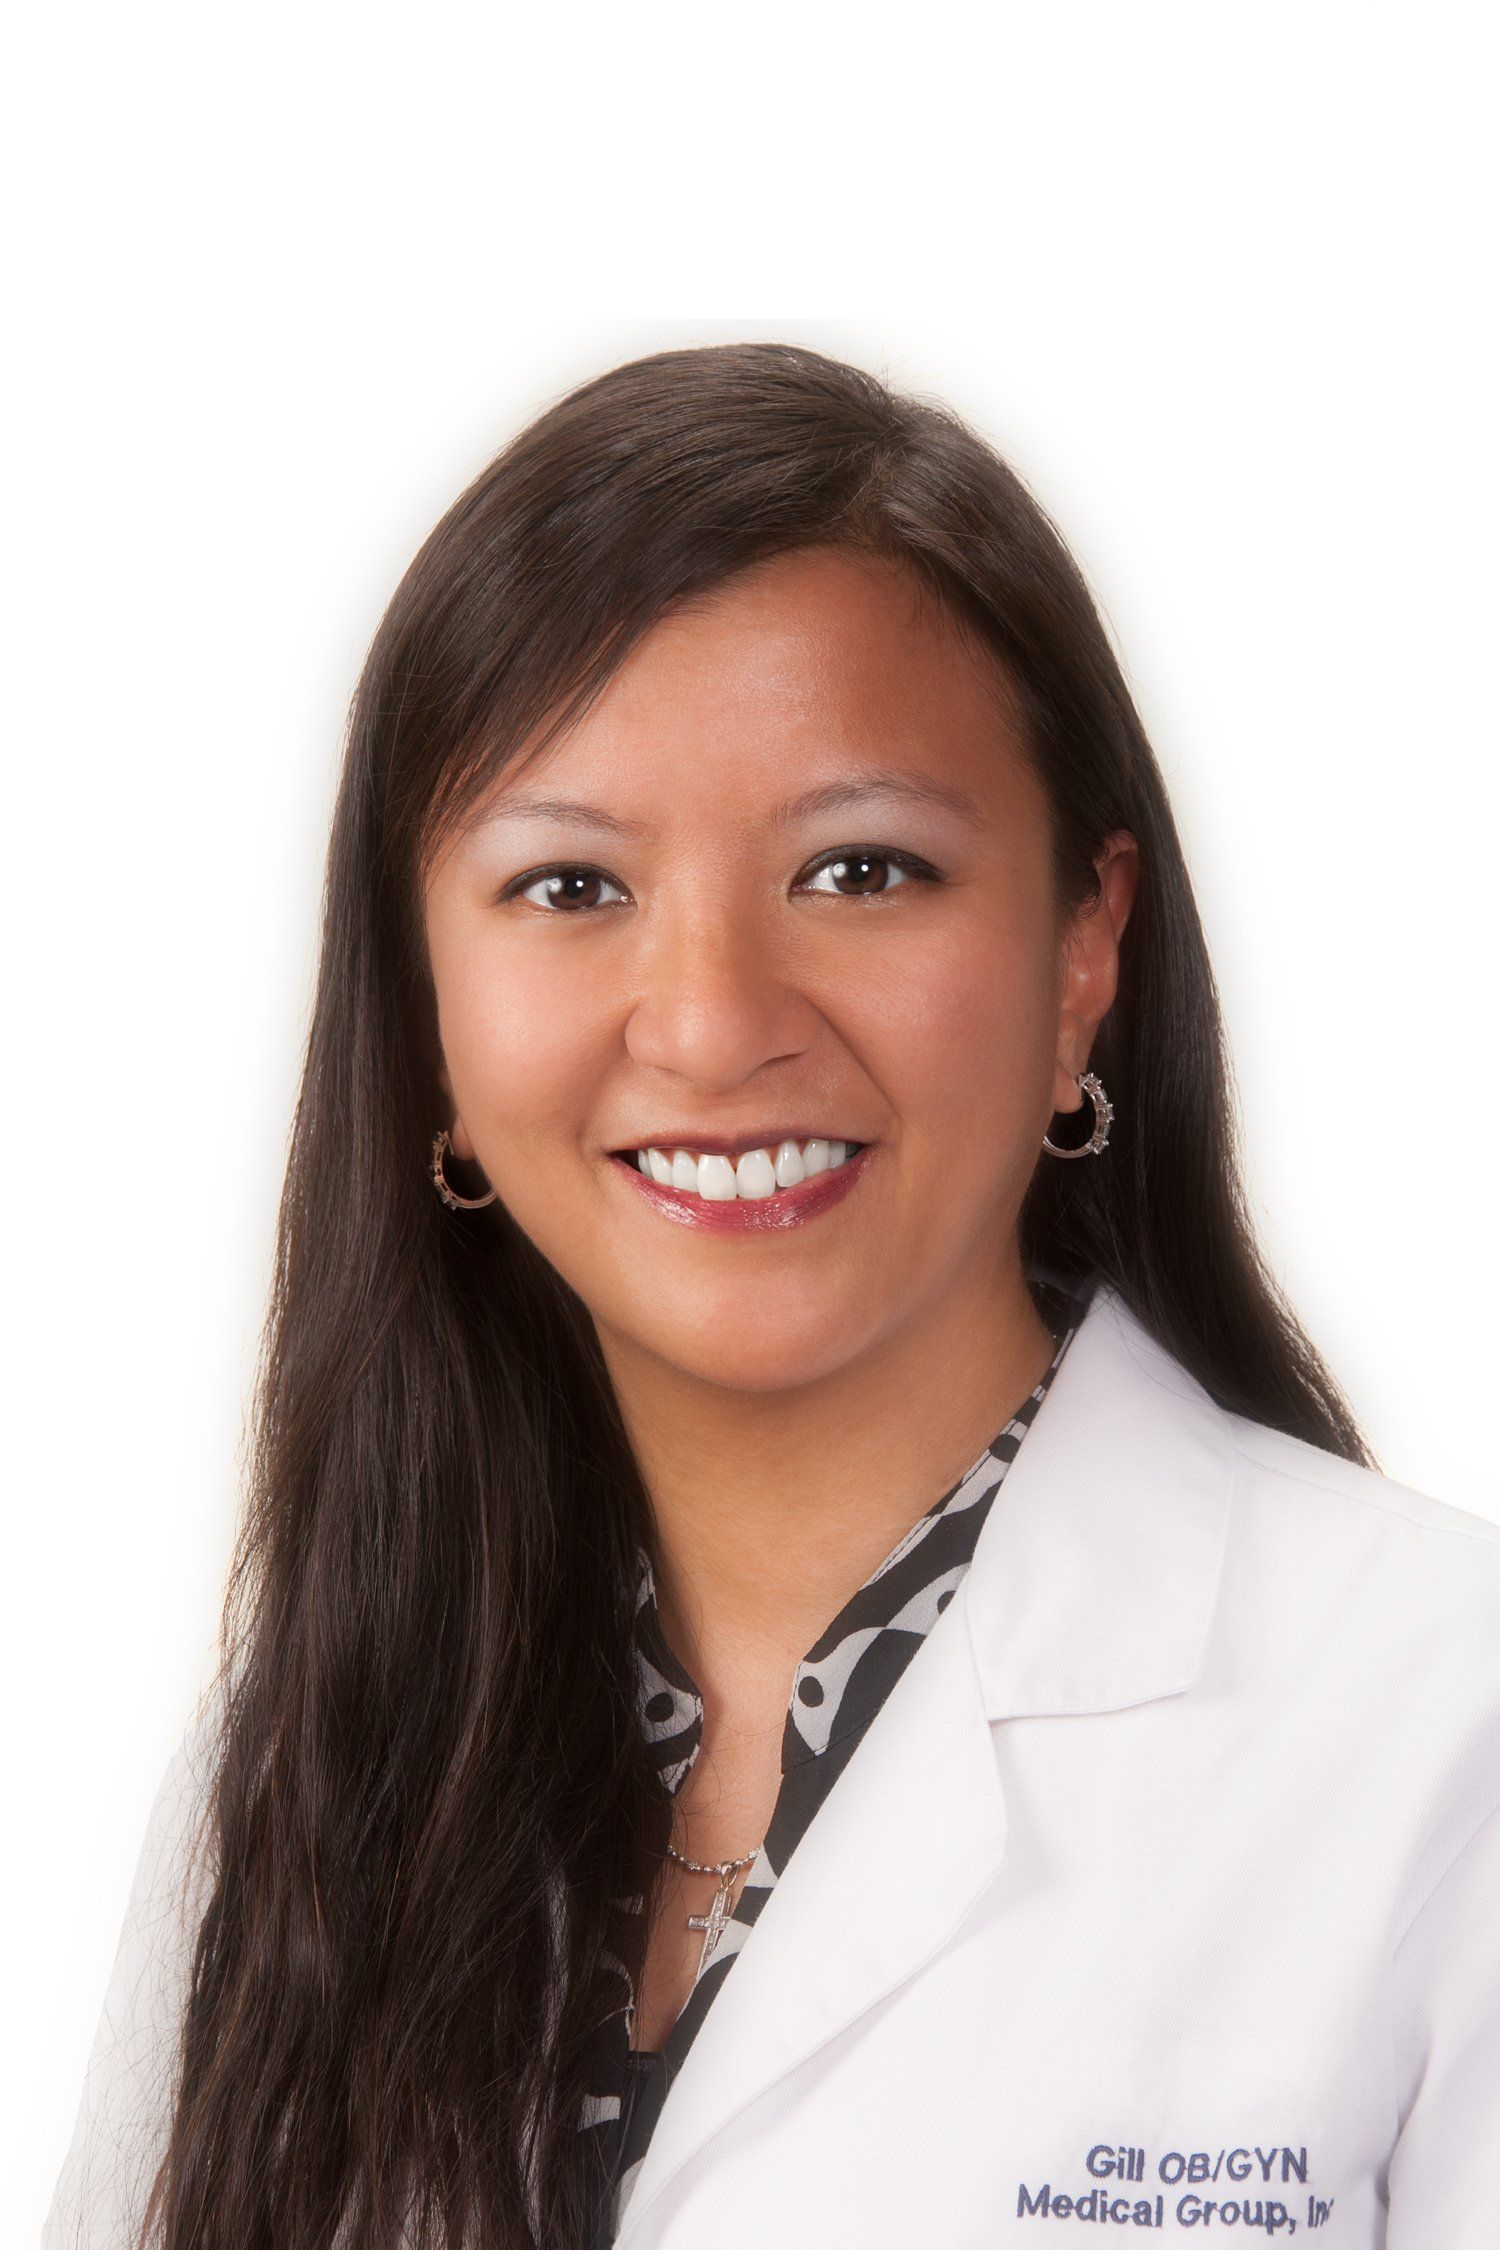 Obstetrics — Maria E. Escalona, M.D. in Stockton, CA